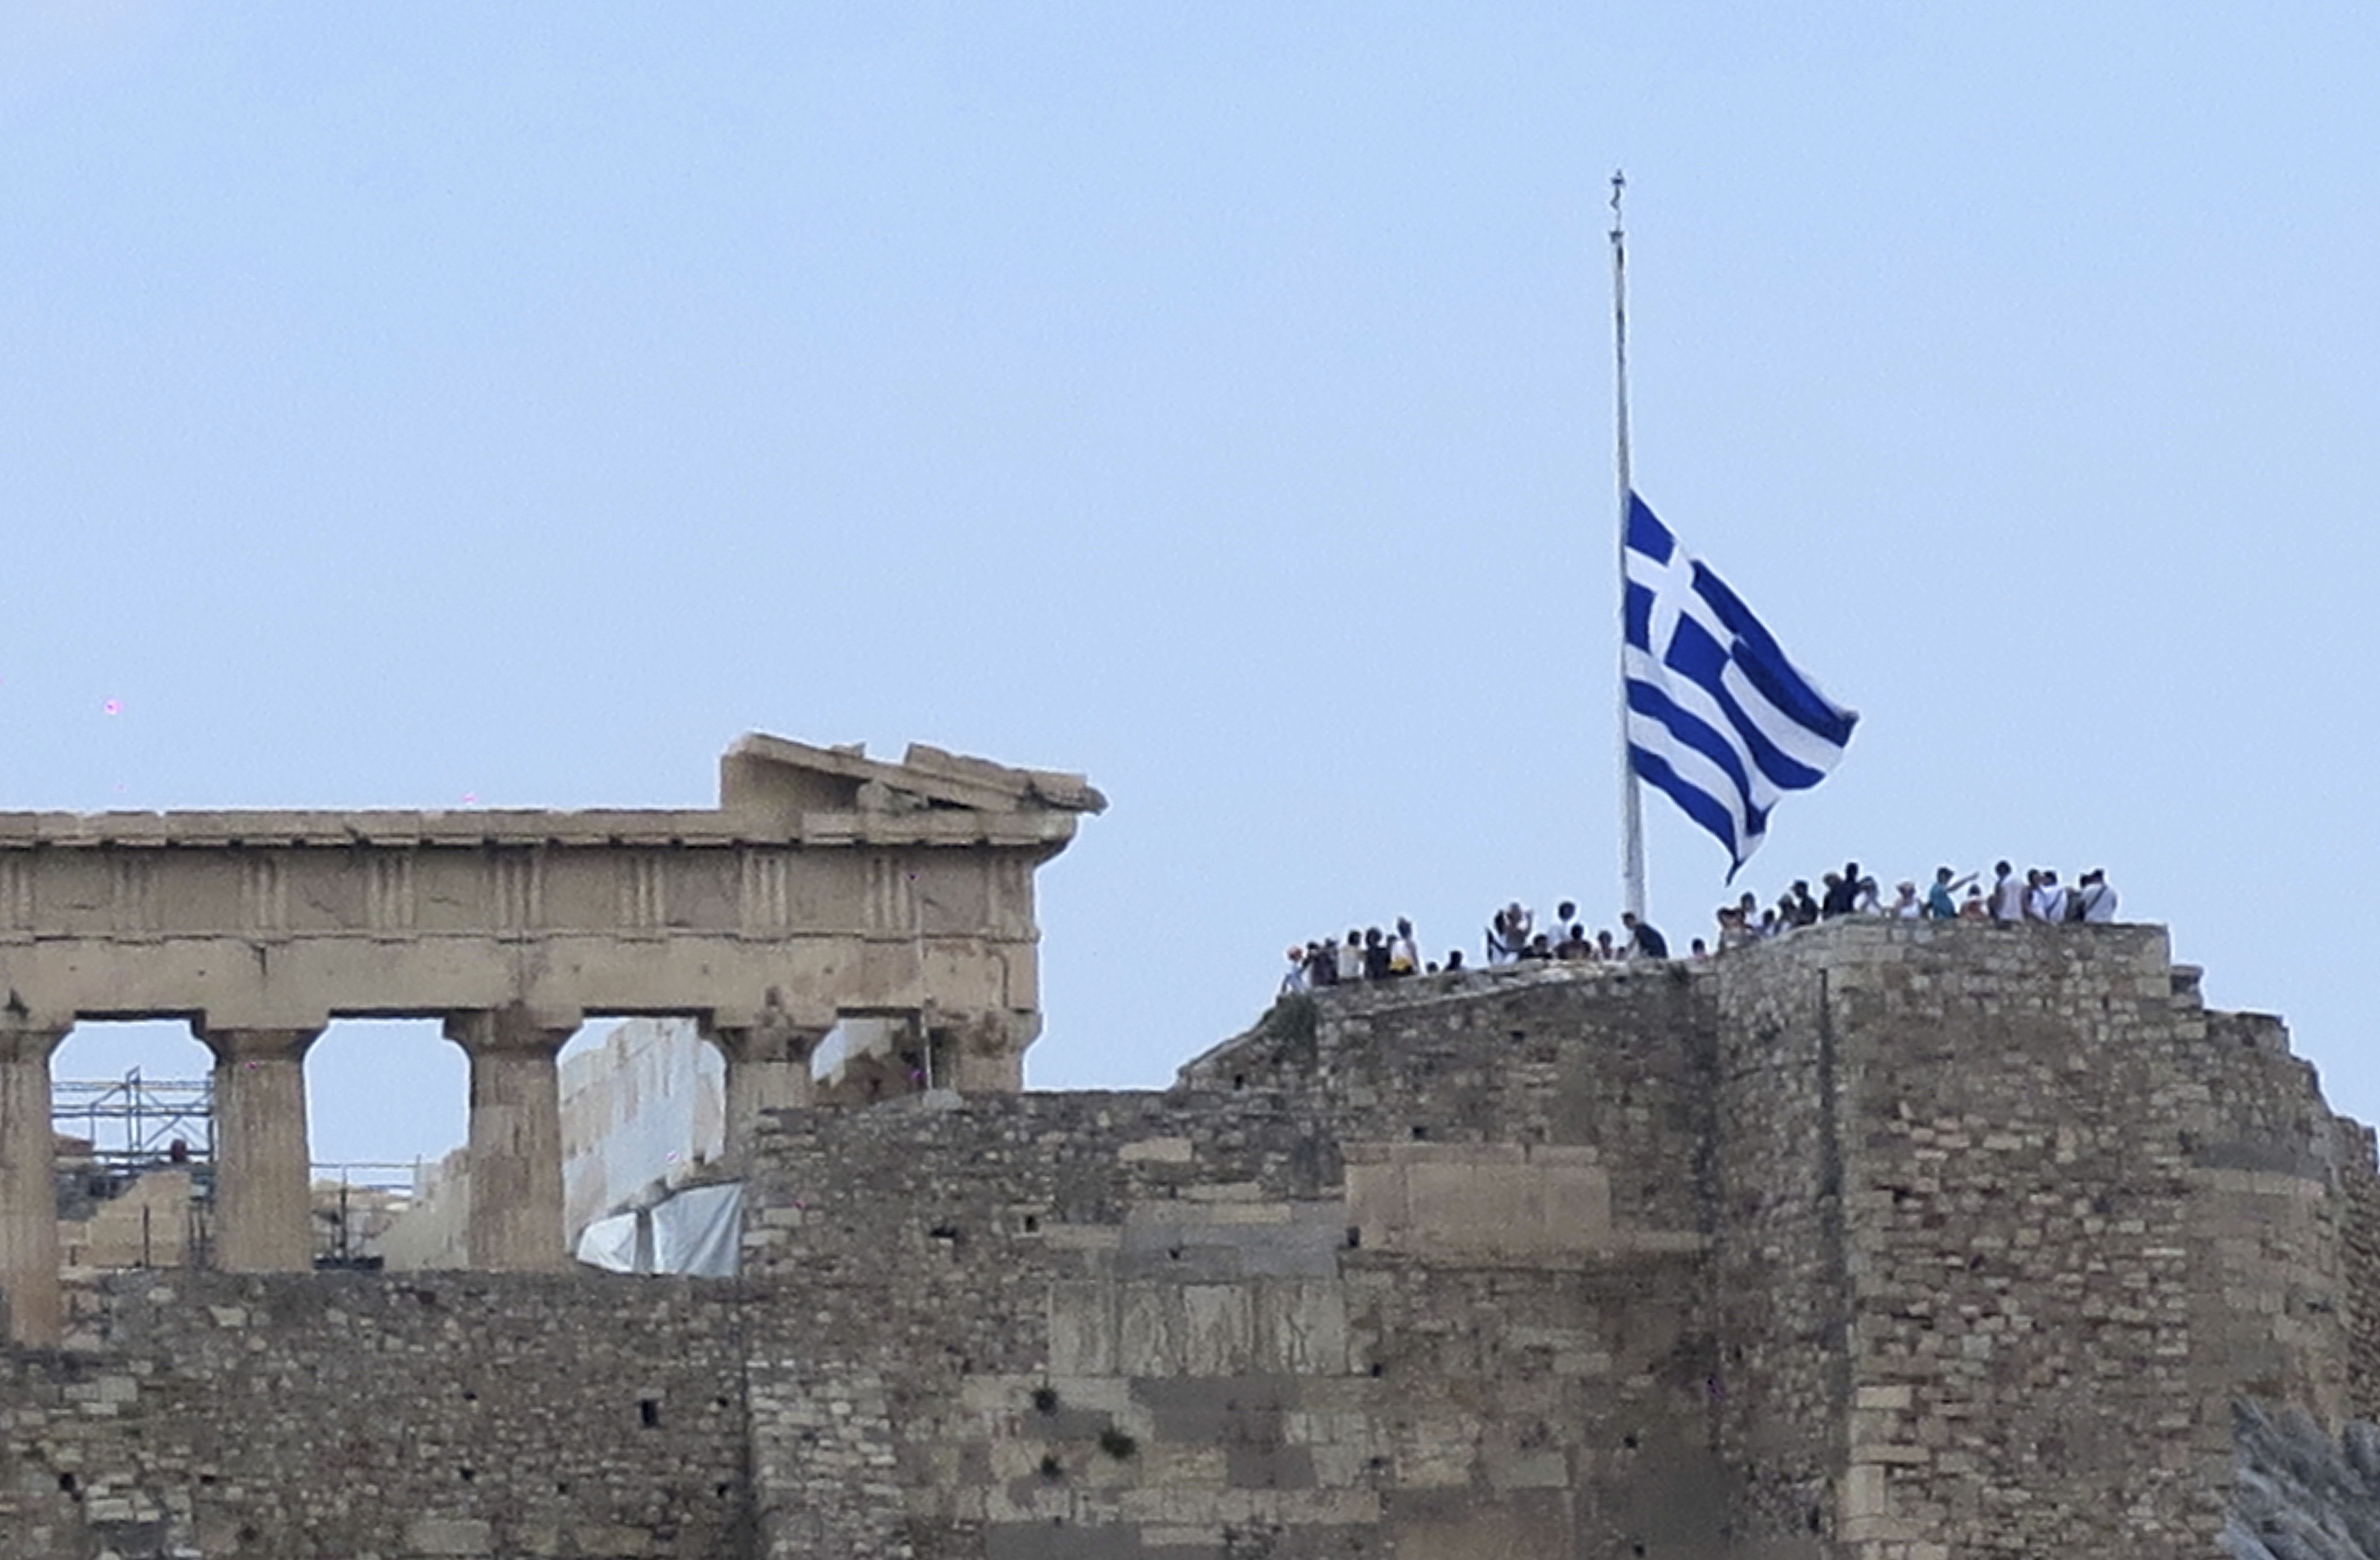 Acropolis flag